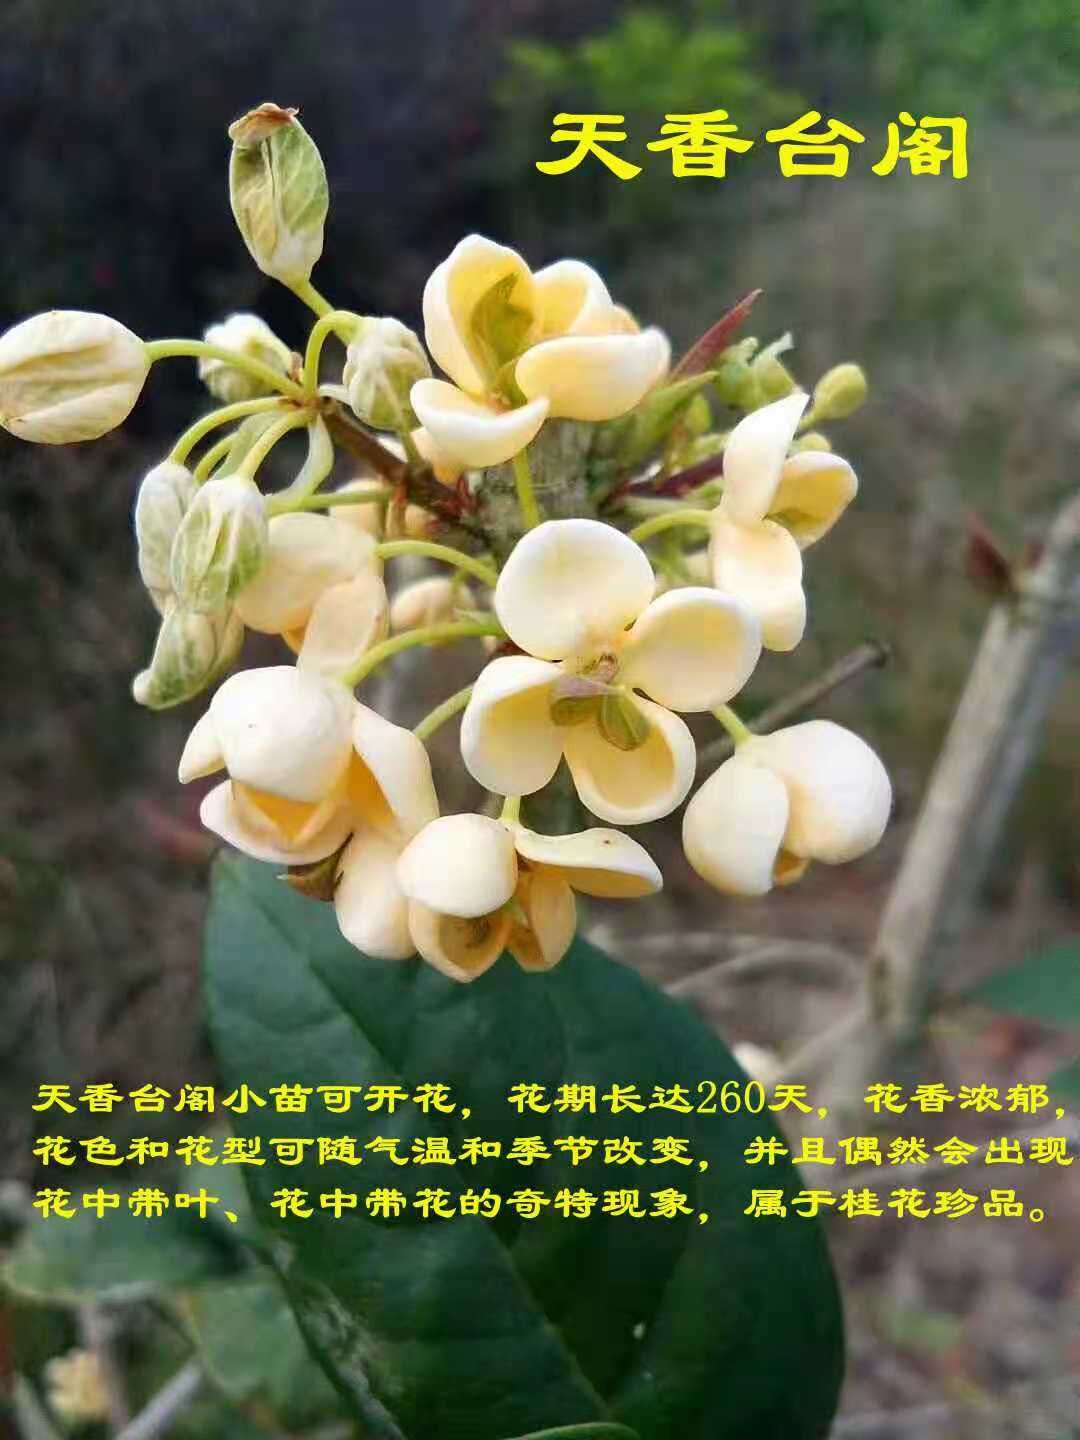 天香台阁桂花苗日香桂花苗扦插苗四季桂中花期最长的品种